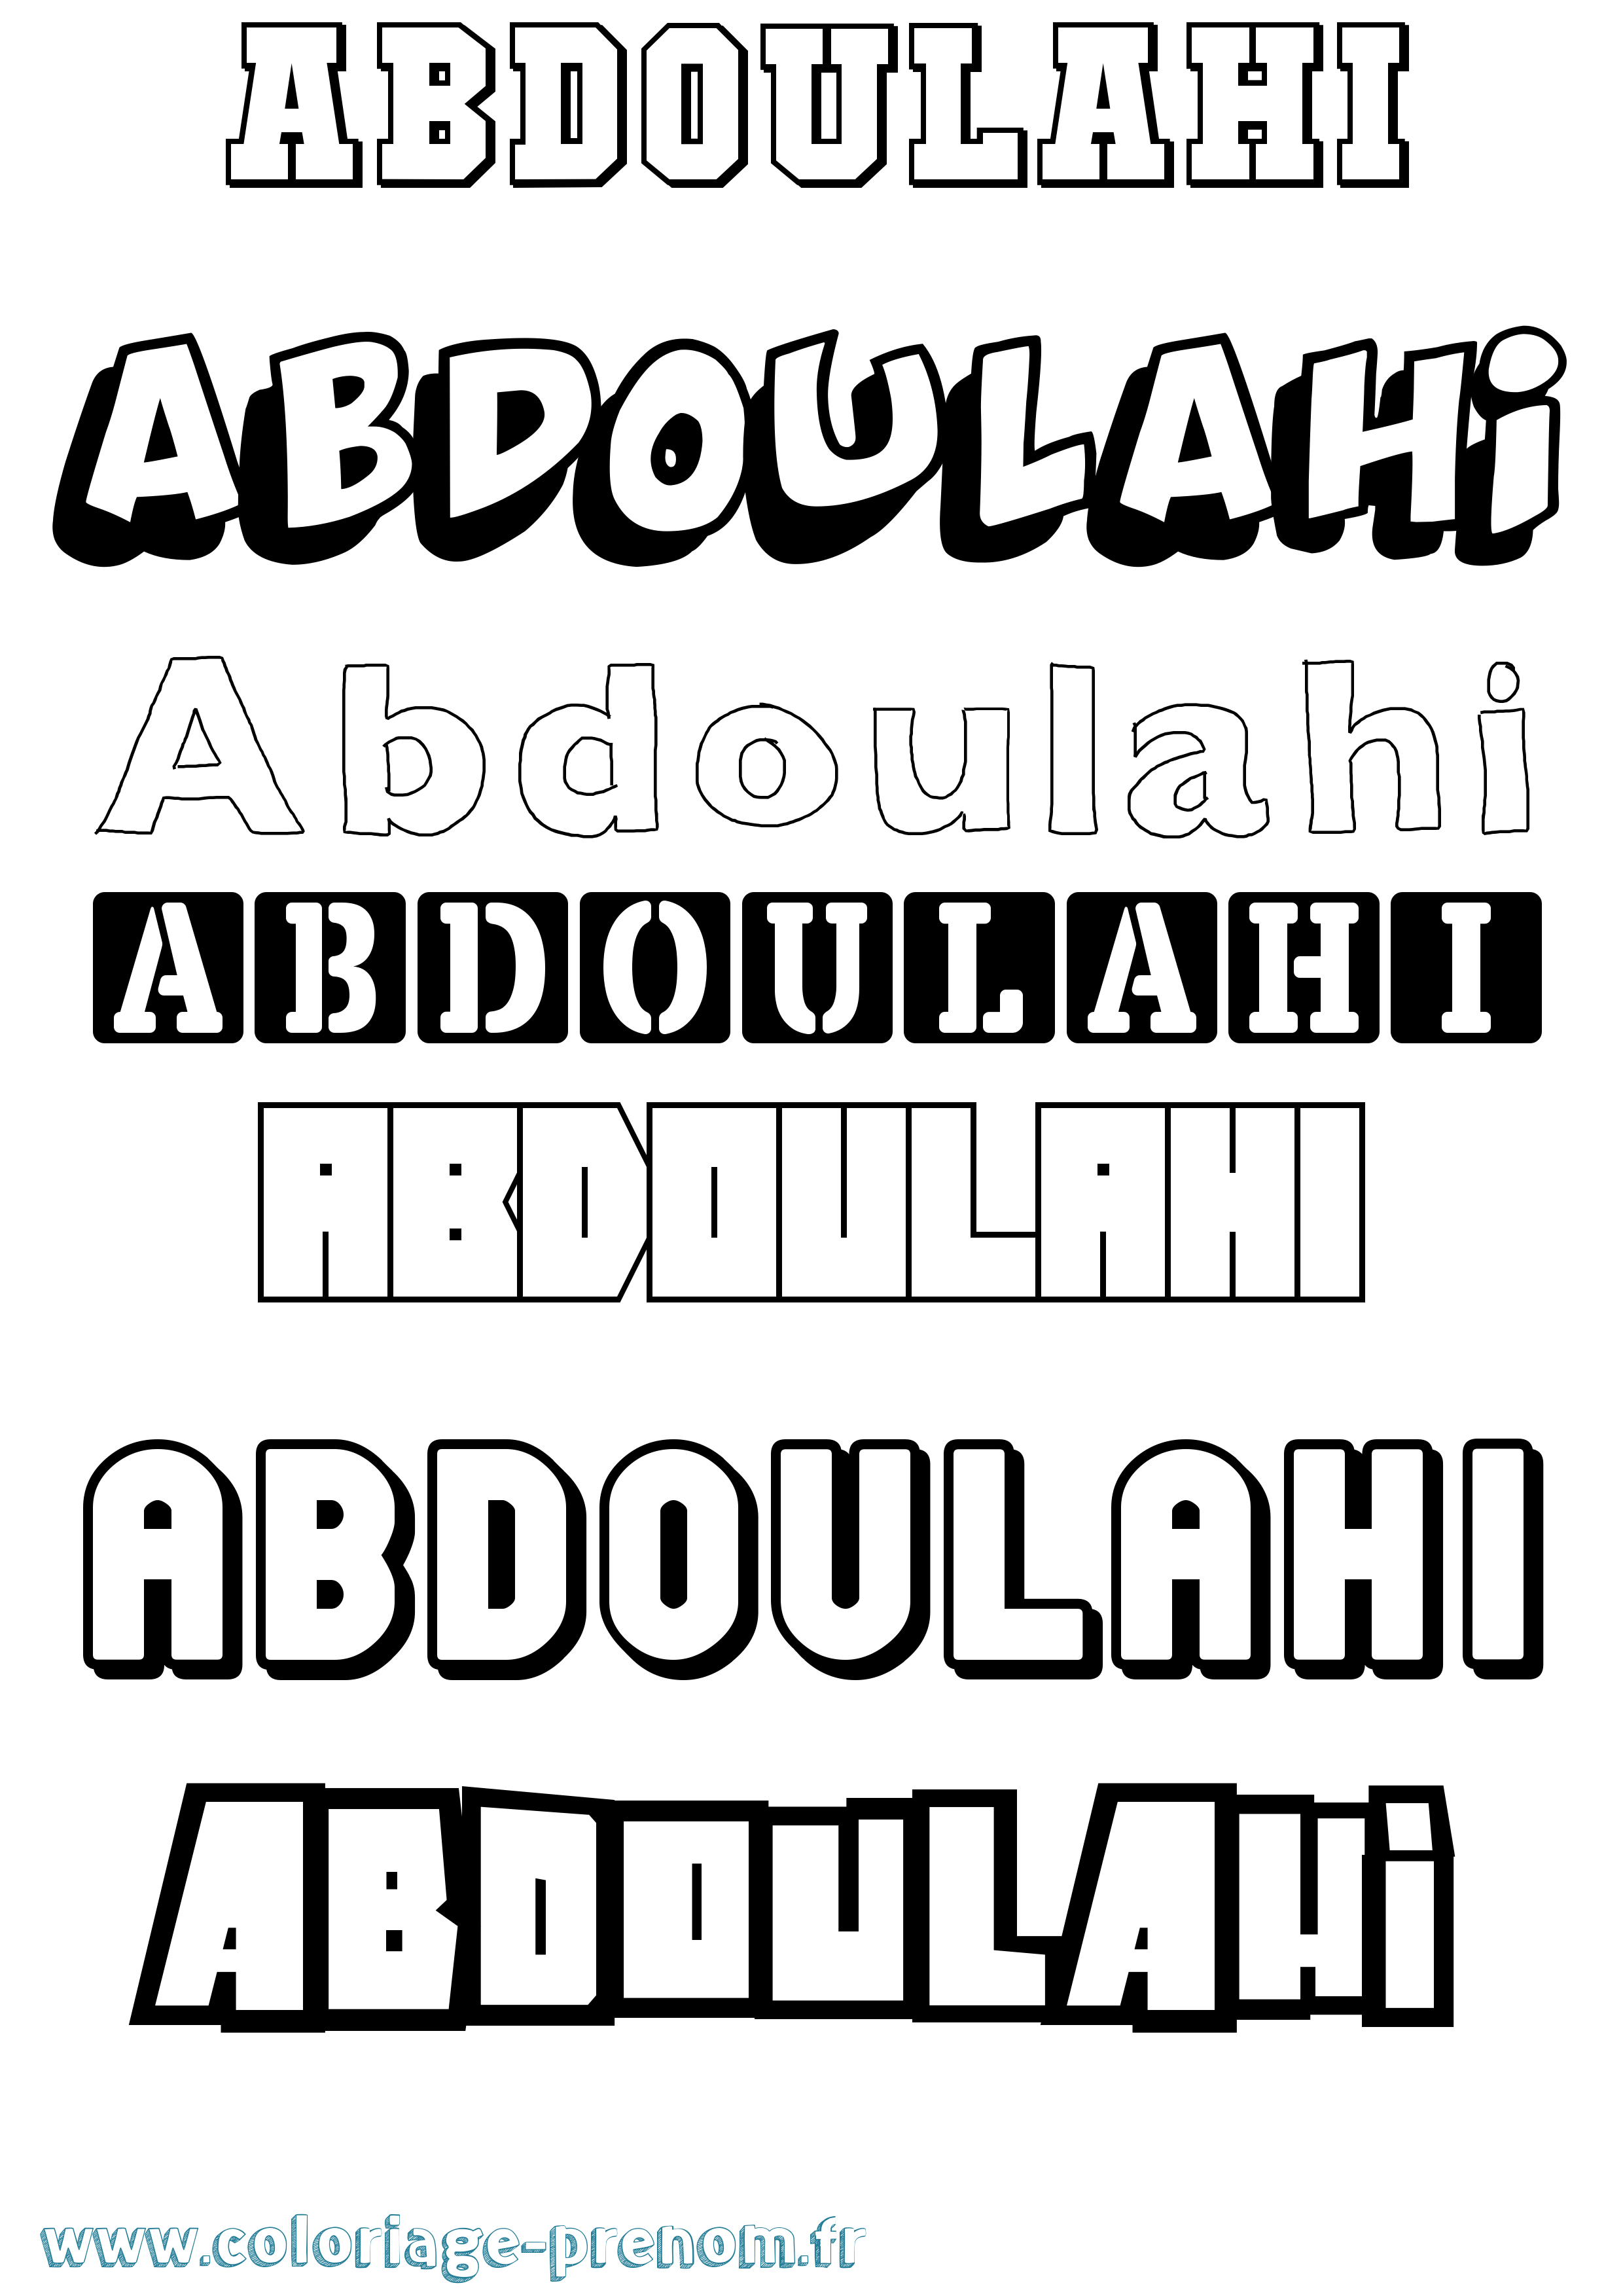 Coloriage prénom Abdoulahi Simple